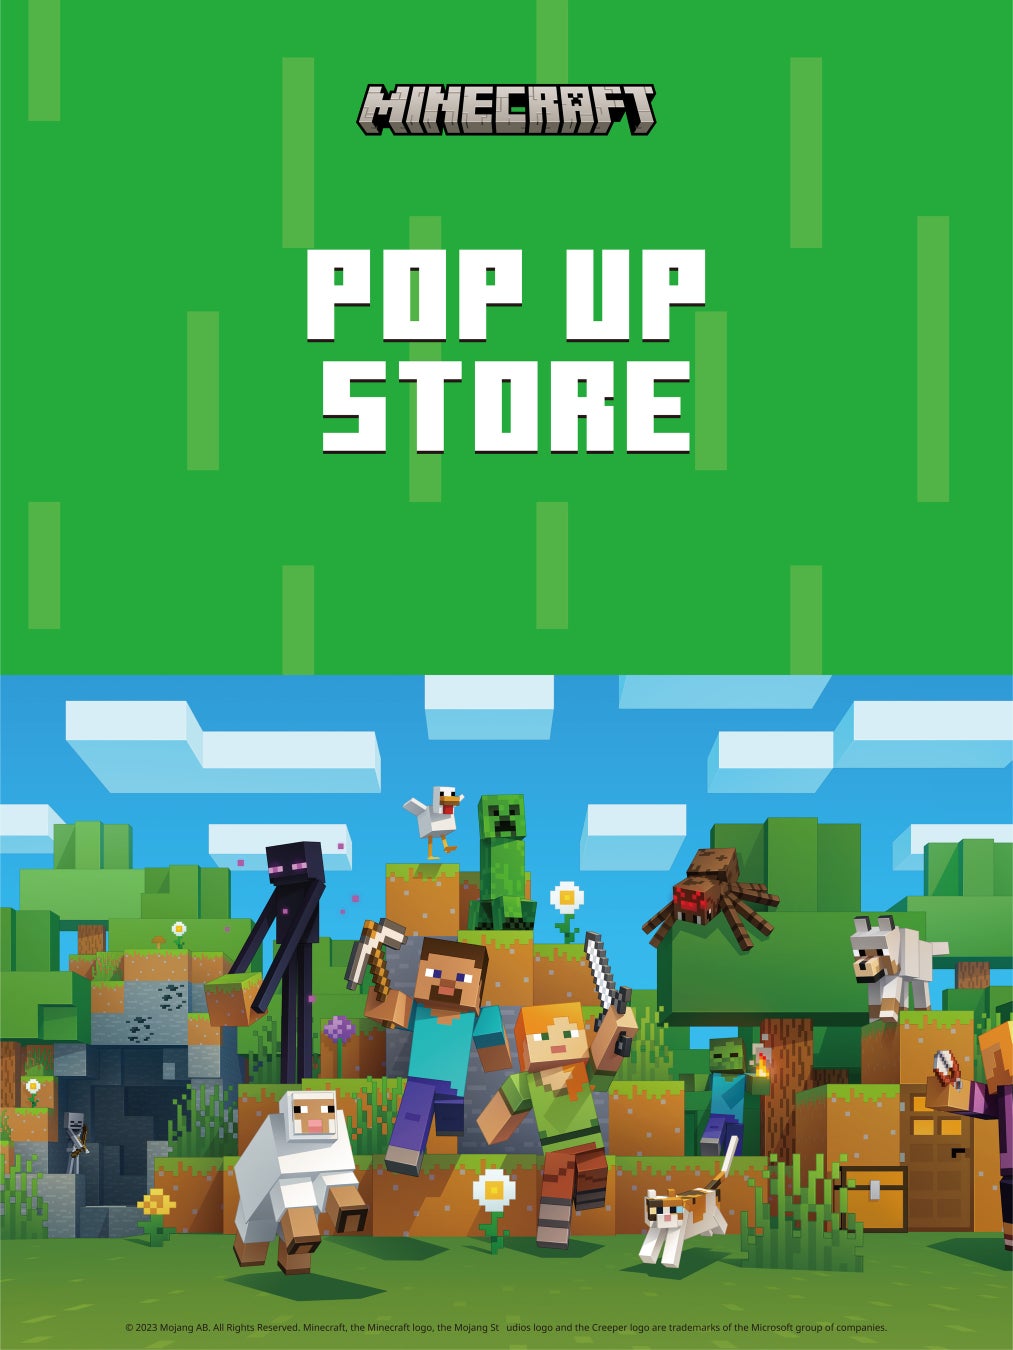 「MINECRAFT POPUP STORE」がゴールデンウィーク期間中に各地で開催！大人気ゲーム『マインクラフト』の店舗限定特典や新商品を多数販売！！